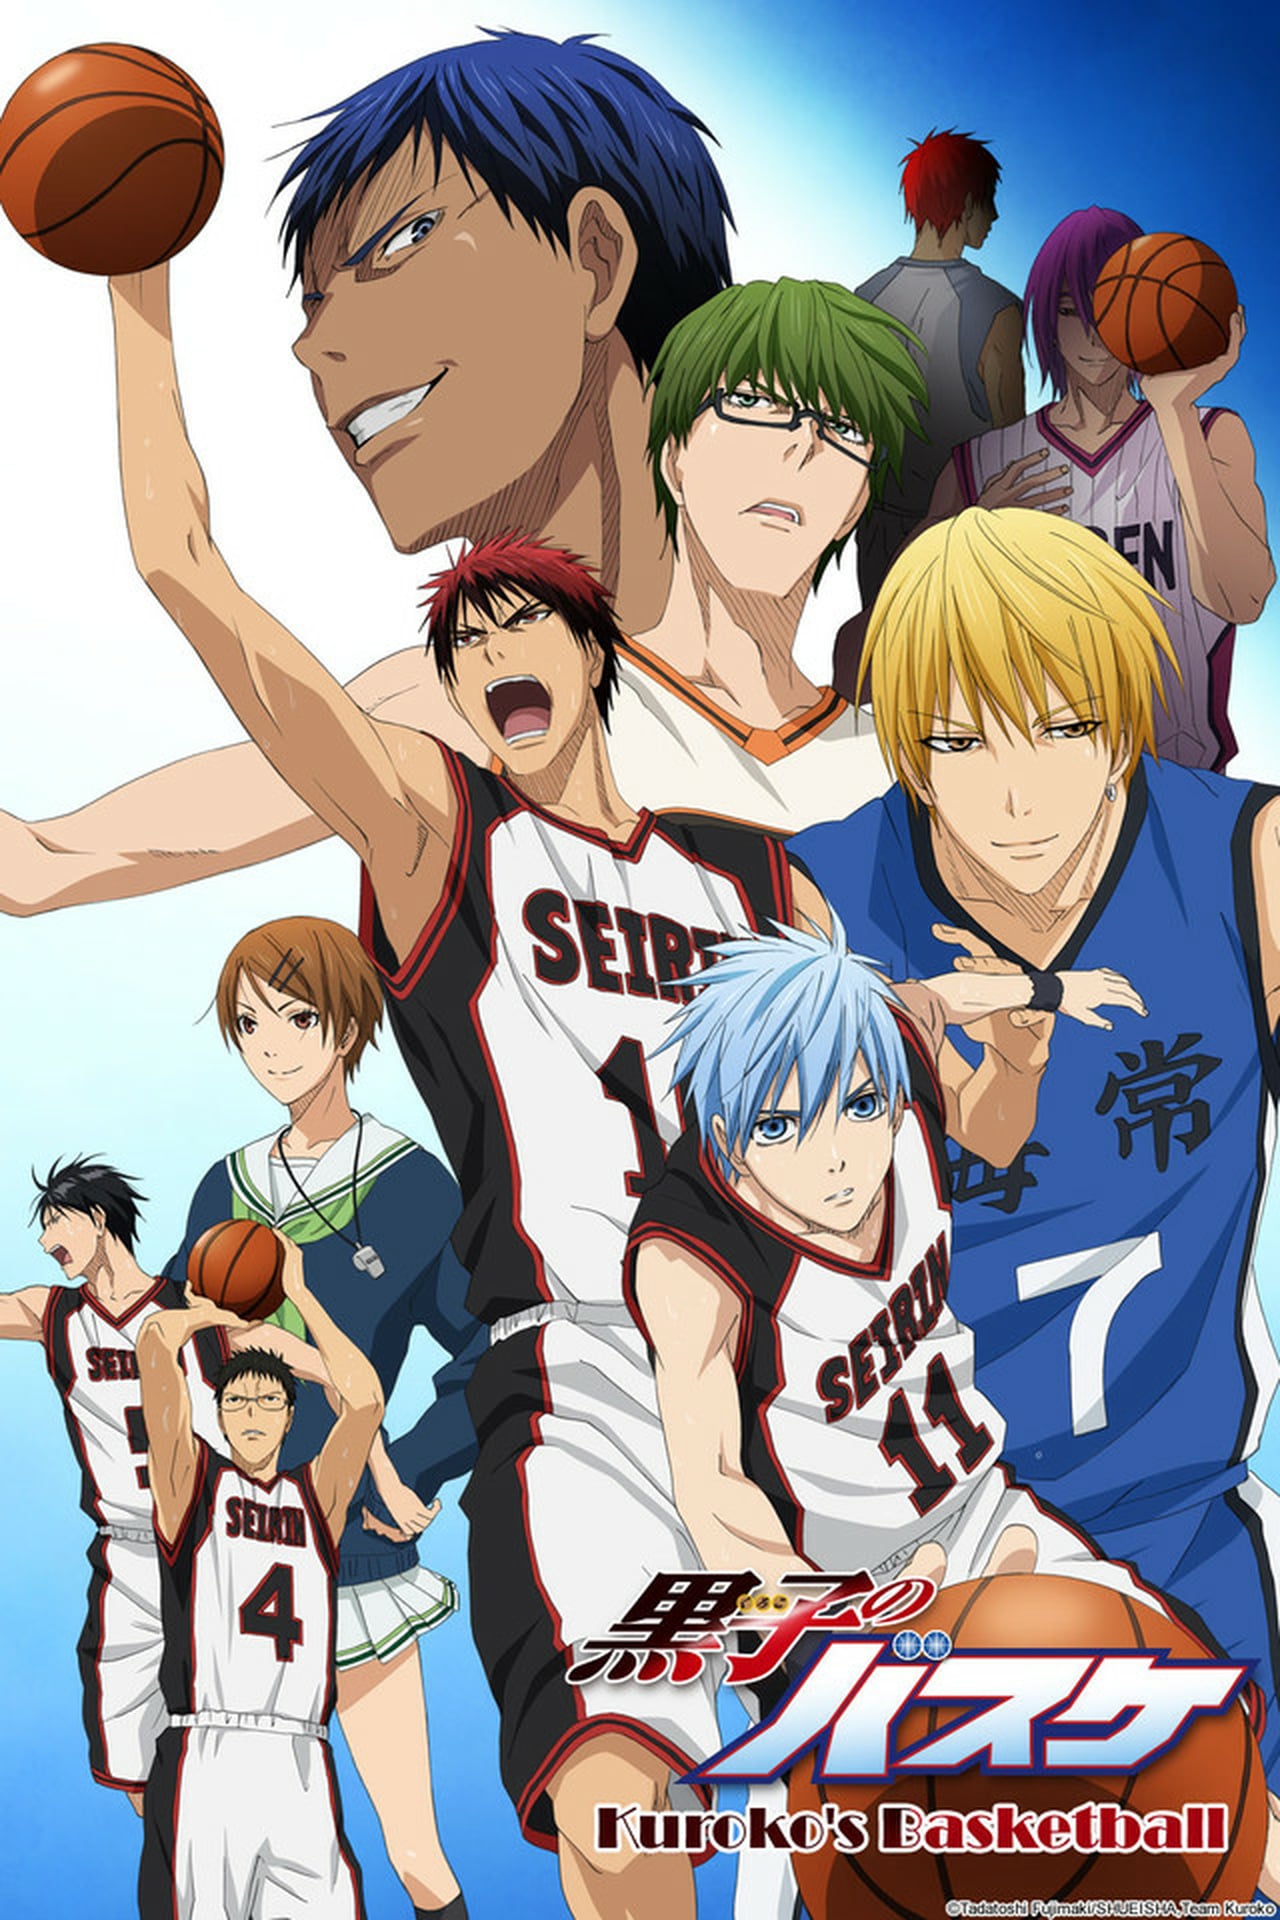 Netflix Adds 'Kuroko's Basketball' Anime | Hypebeast